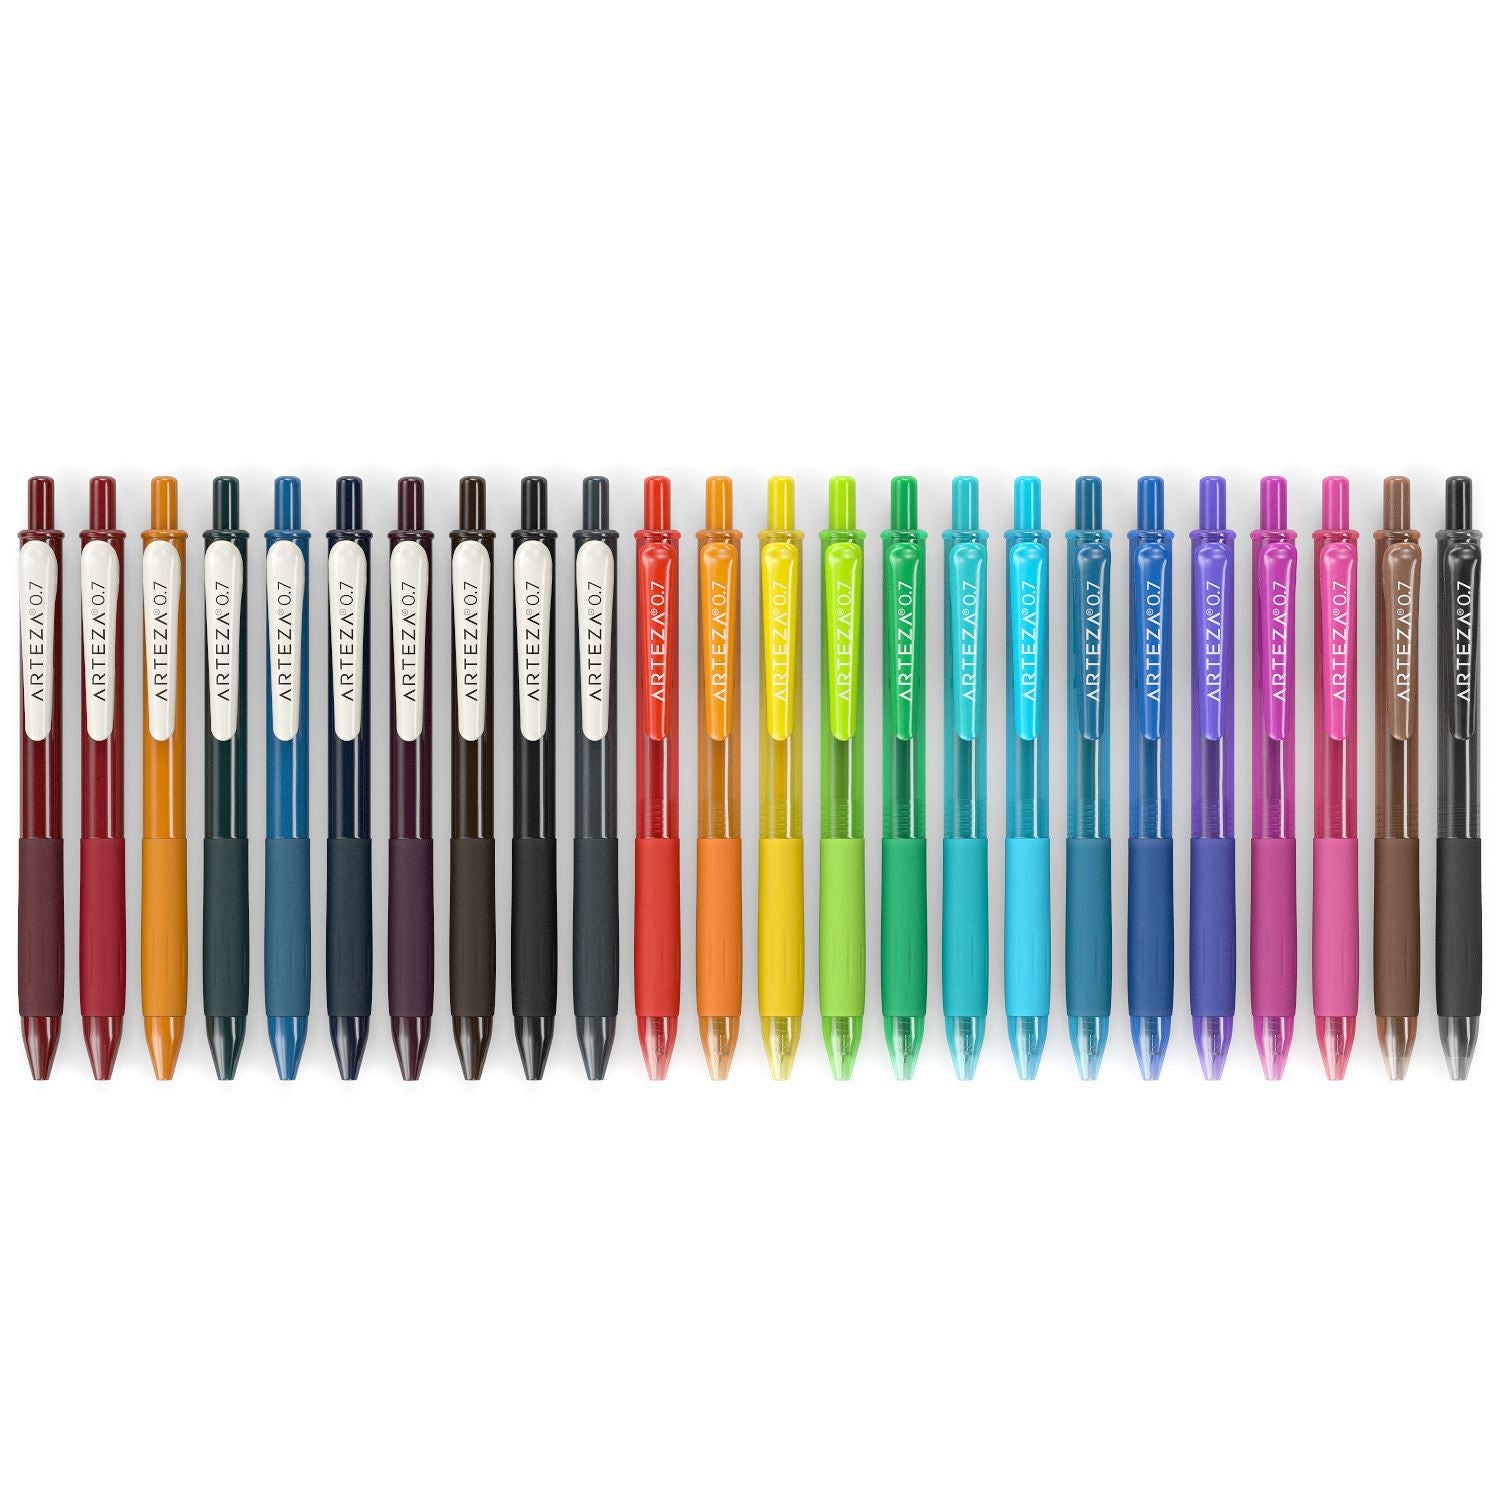 https://arteza.com/cdn/shop/products/retractable-gel-ink-pens-vintage-bright-colors-set-of-24_Nv4NlhA1.jpg?v=1666631659&width=1946